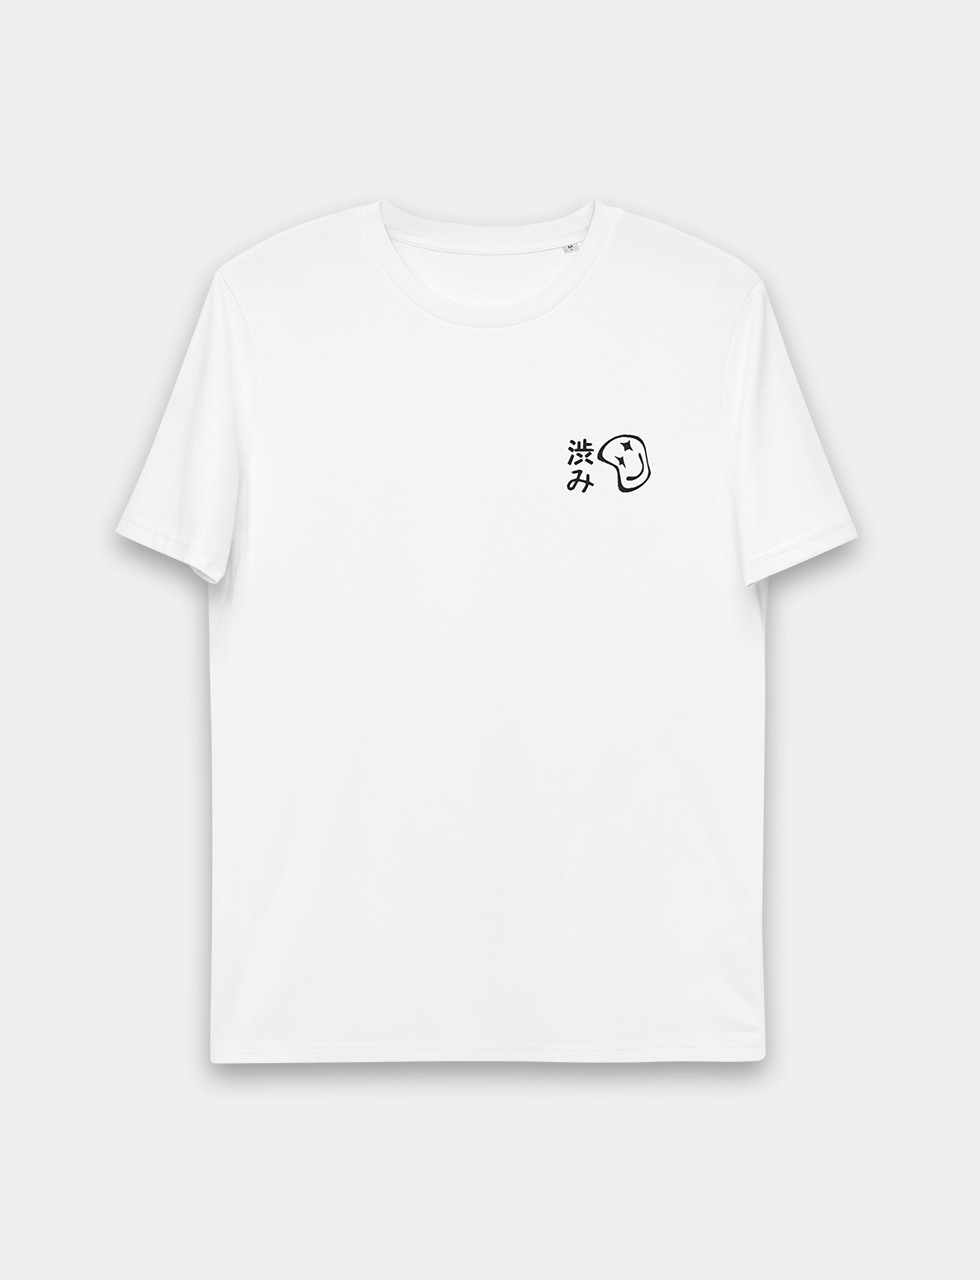 ECO Shibumi Unisex Shirt